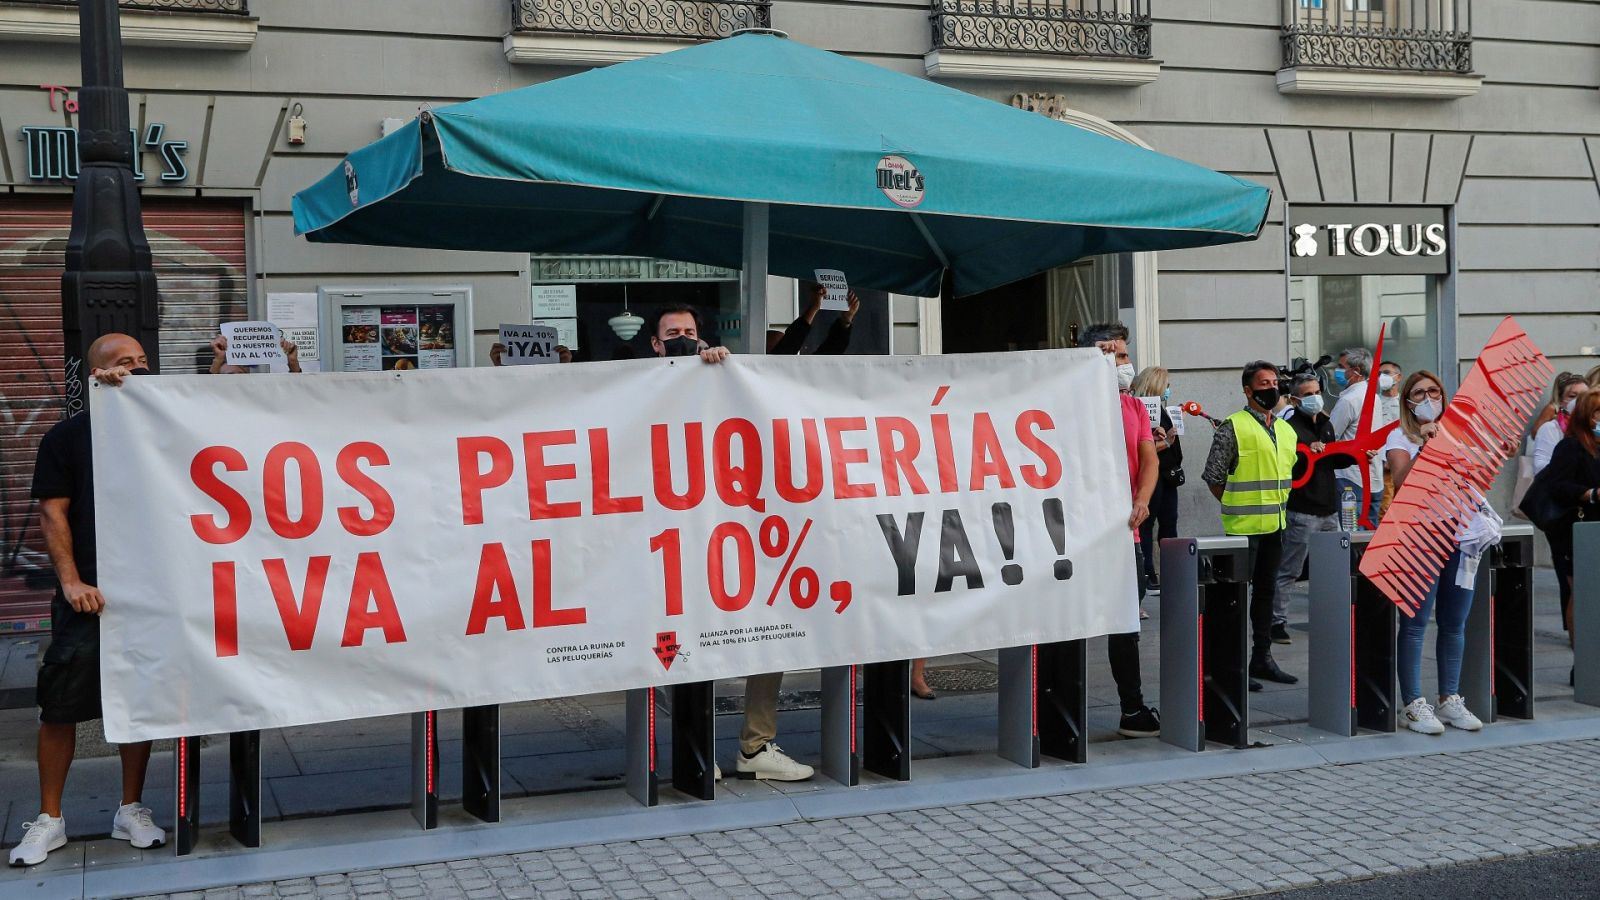 Manifestantes convocados por la Alianza por la Bajada del IVA al 10% a las Peluquerías, durante una protesta ante el Ministerio de Hacienda, en Madrid